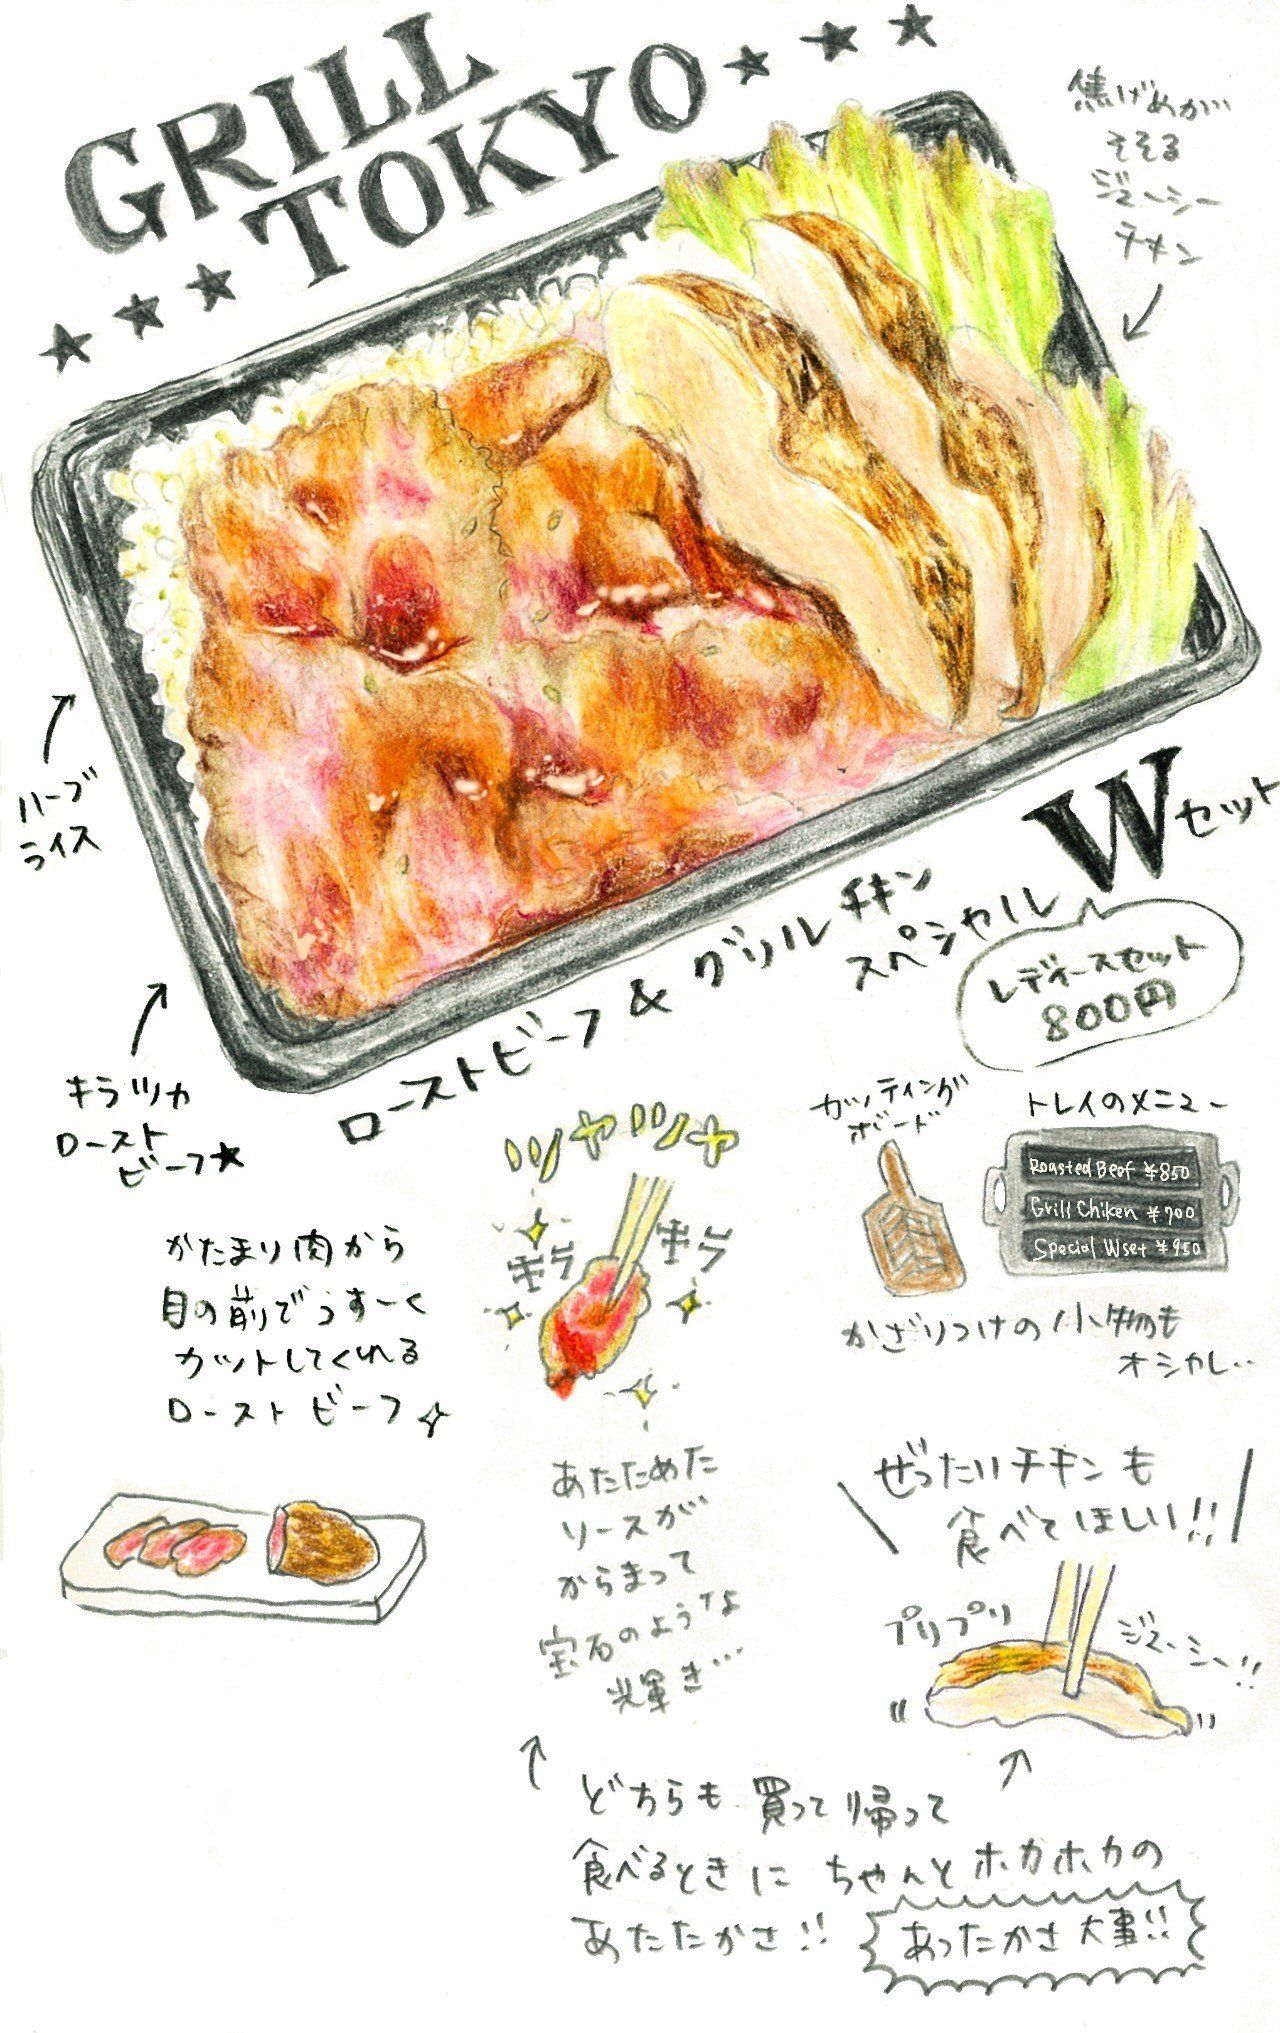 そそる弁当7 つやキラあったか シズル感最高のローストビーフとグリルチキン Grill Tokyo Mellow Note